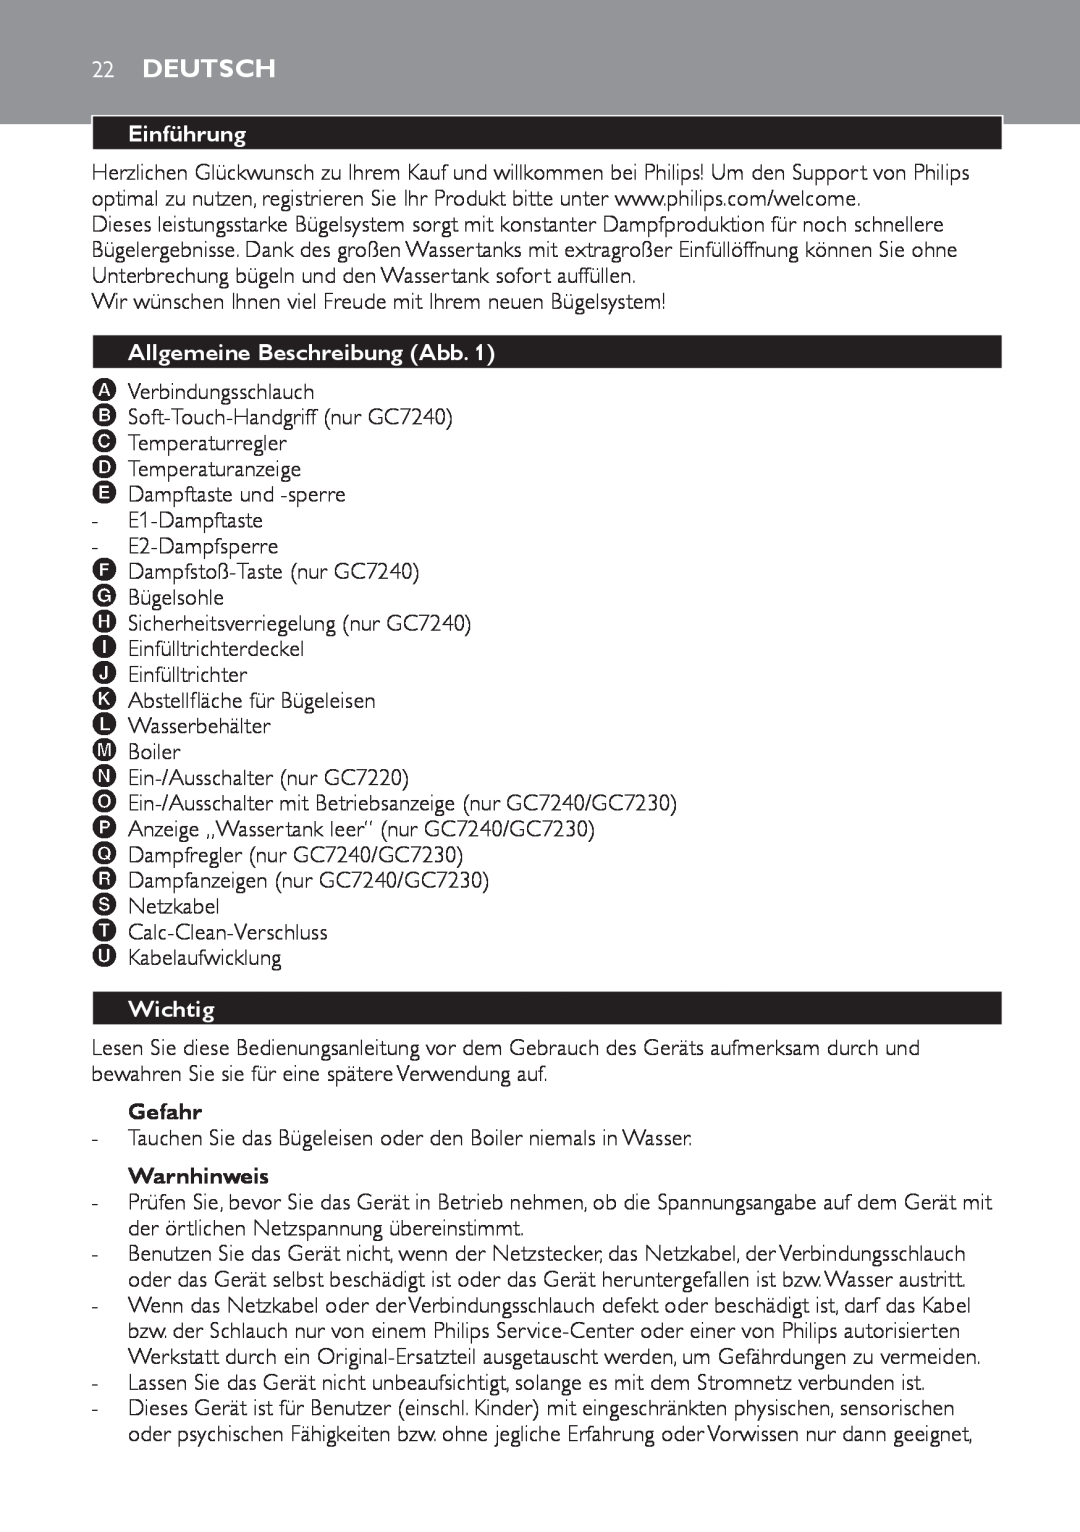 Philips GC7230, GC7220, GC7240 manual Deutsch, Einführung, Allgemeine Beschreibung Abb, Wichtig, Gefahr, Warnhinweis 